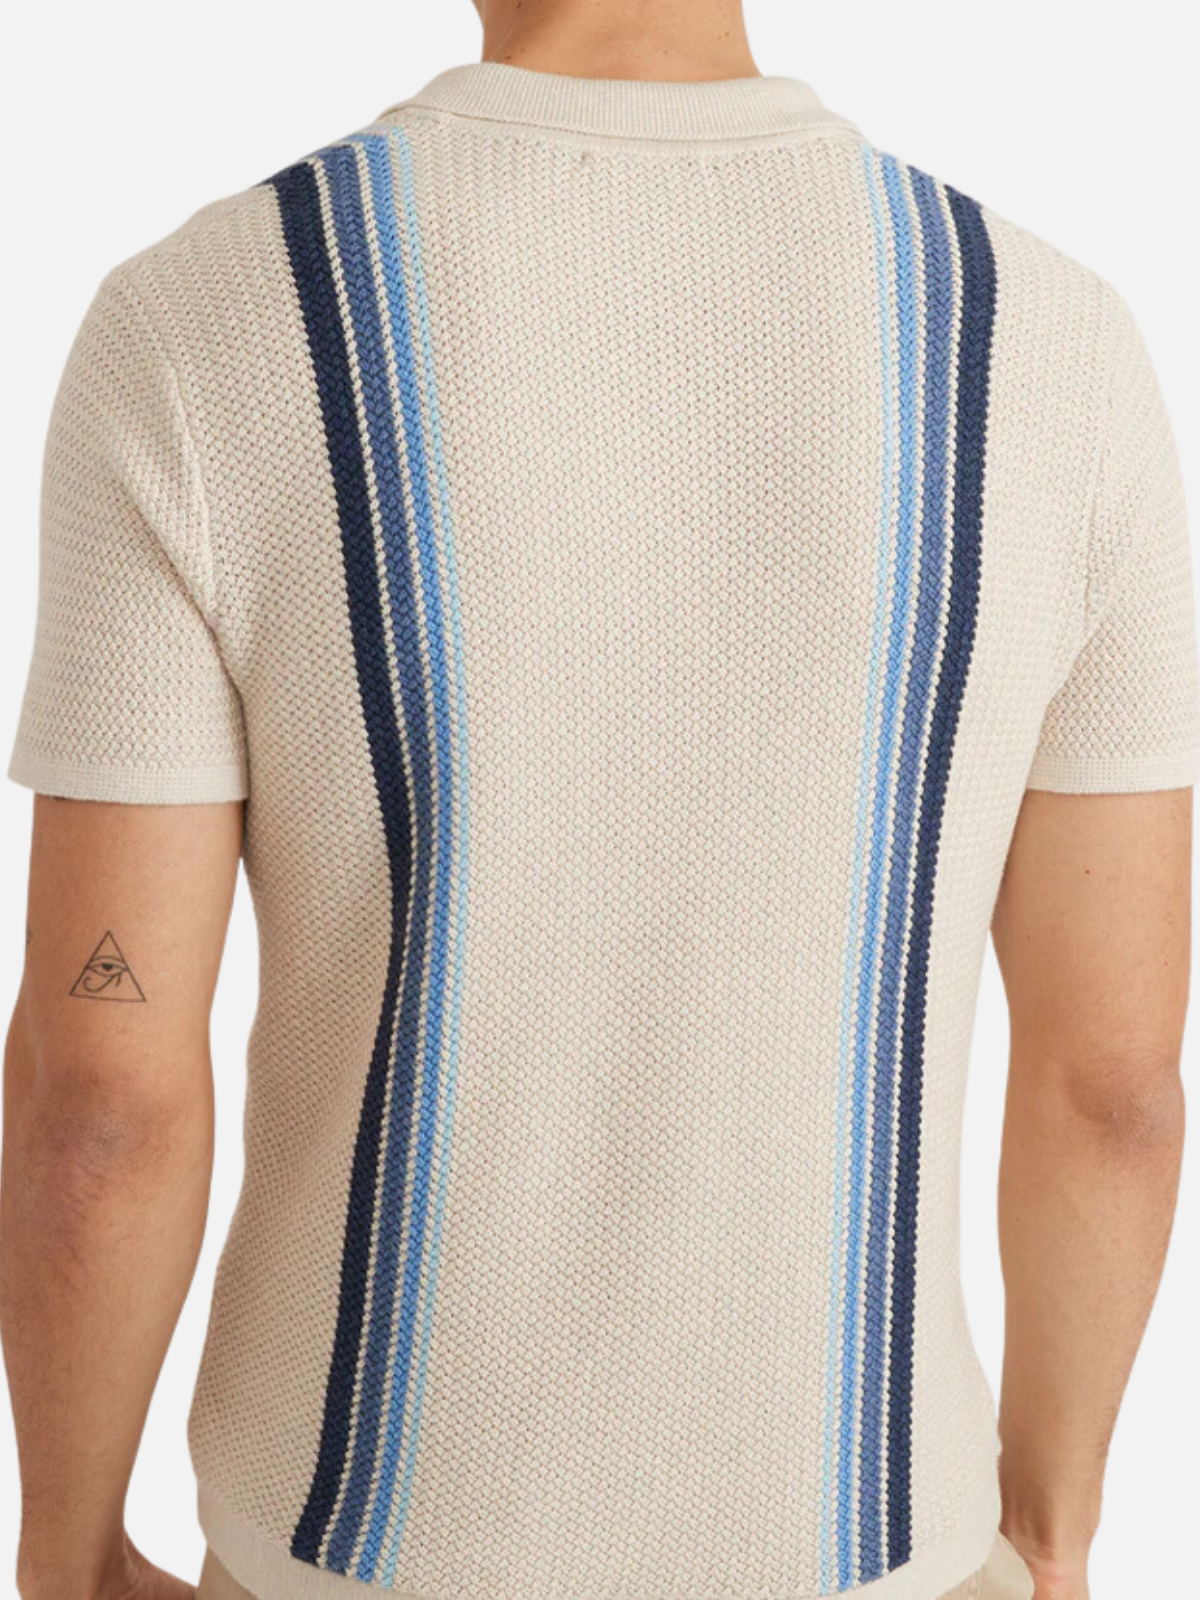 Marine Layer Conrad Stripe Sweater Polo